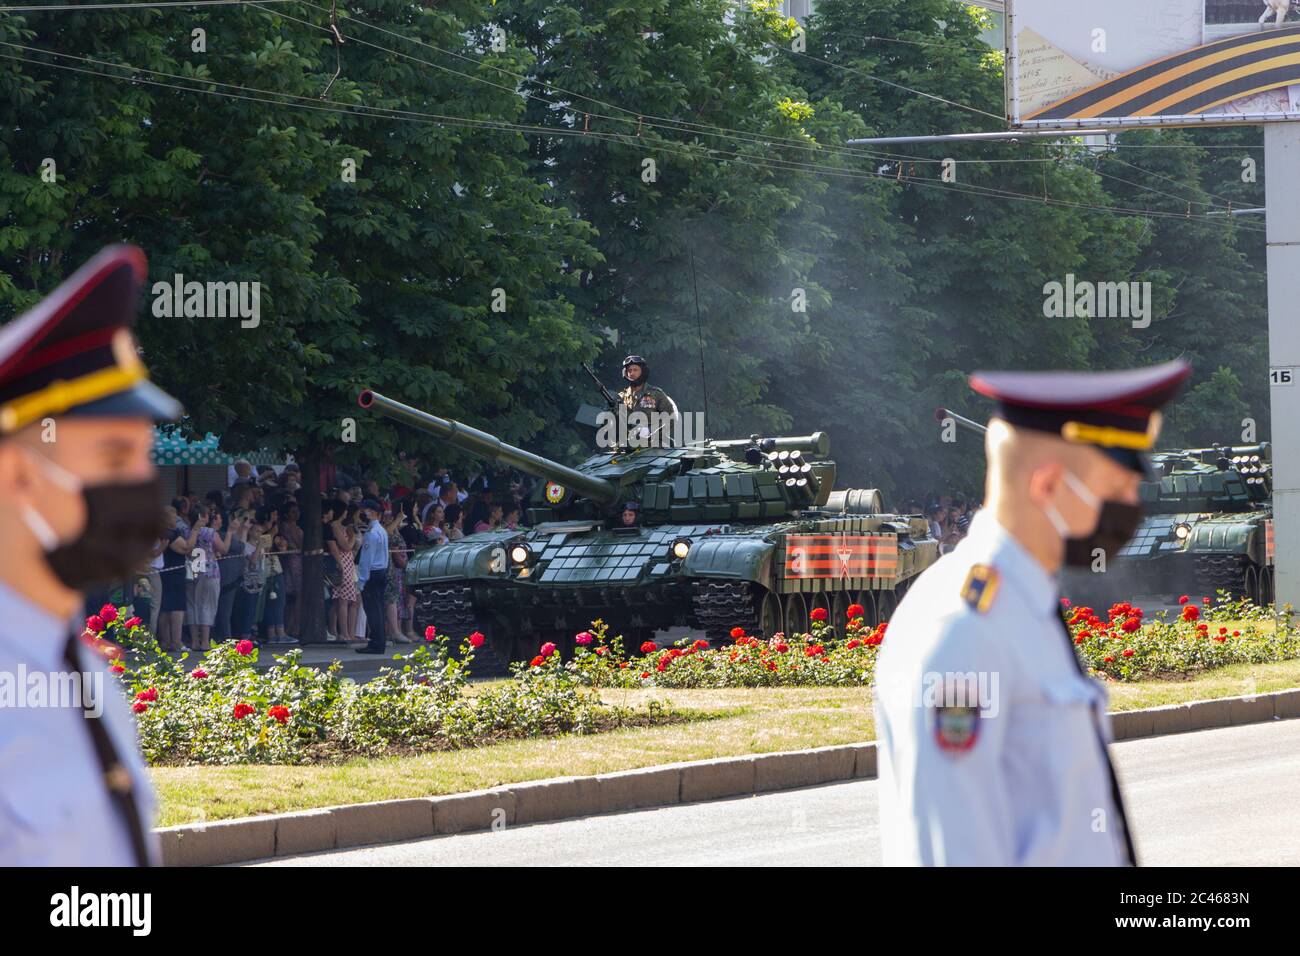 Donetsk, Donetsk People Republic, Ukraine - 24 juin 2020 : des chars soviétiques blindés lourds se déplacent le long de la rue principale de la ville pendant la parade de la victoire Banque D'Images